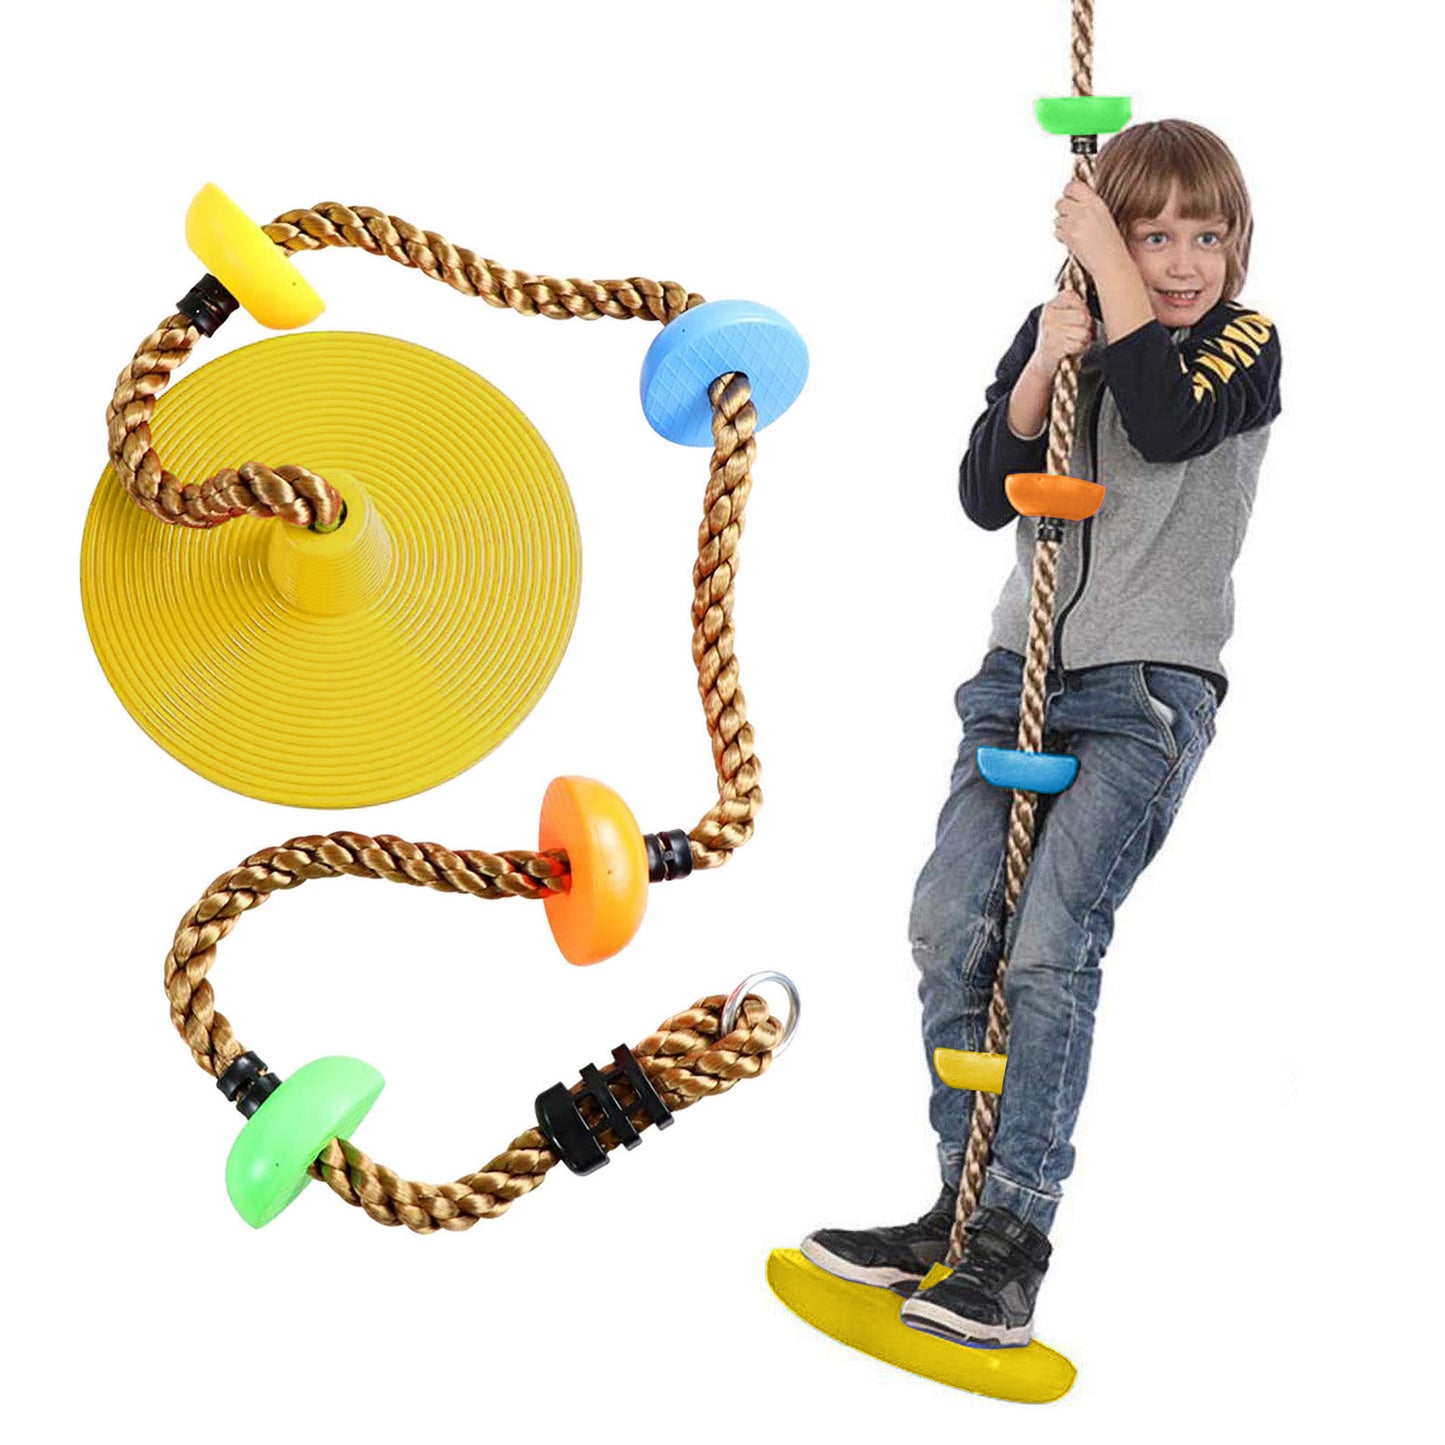 Plastic Children's Swing Play Equipment Outdoor  Kid Toy  Set Accessories